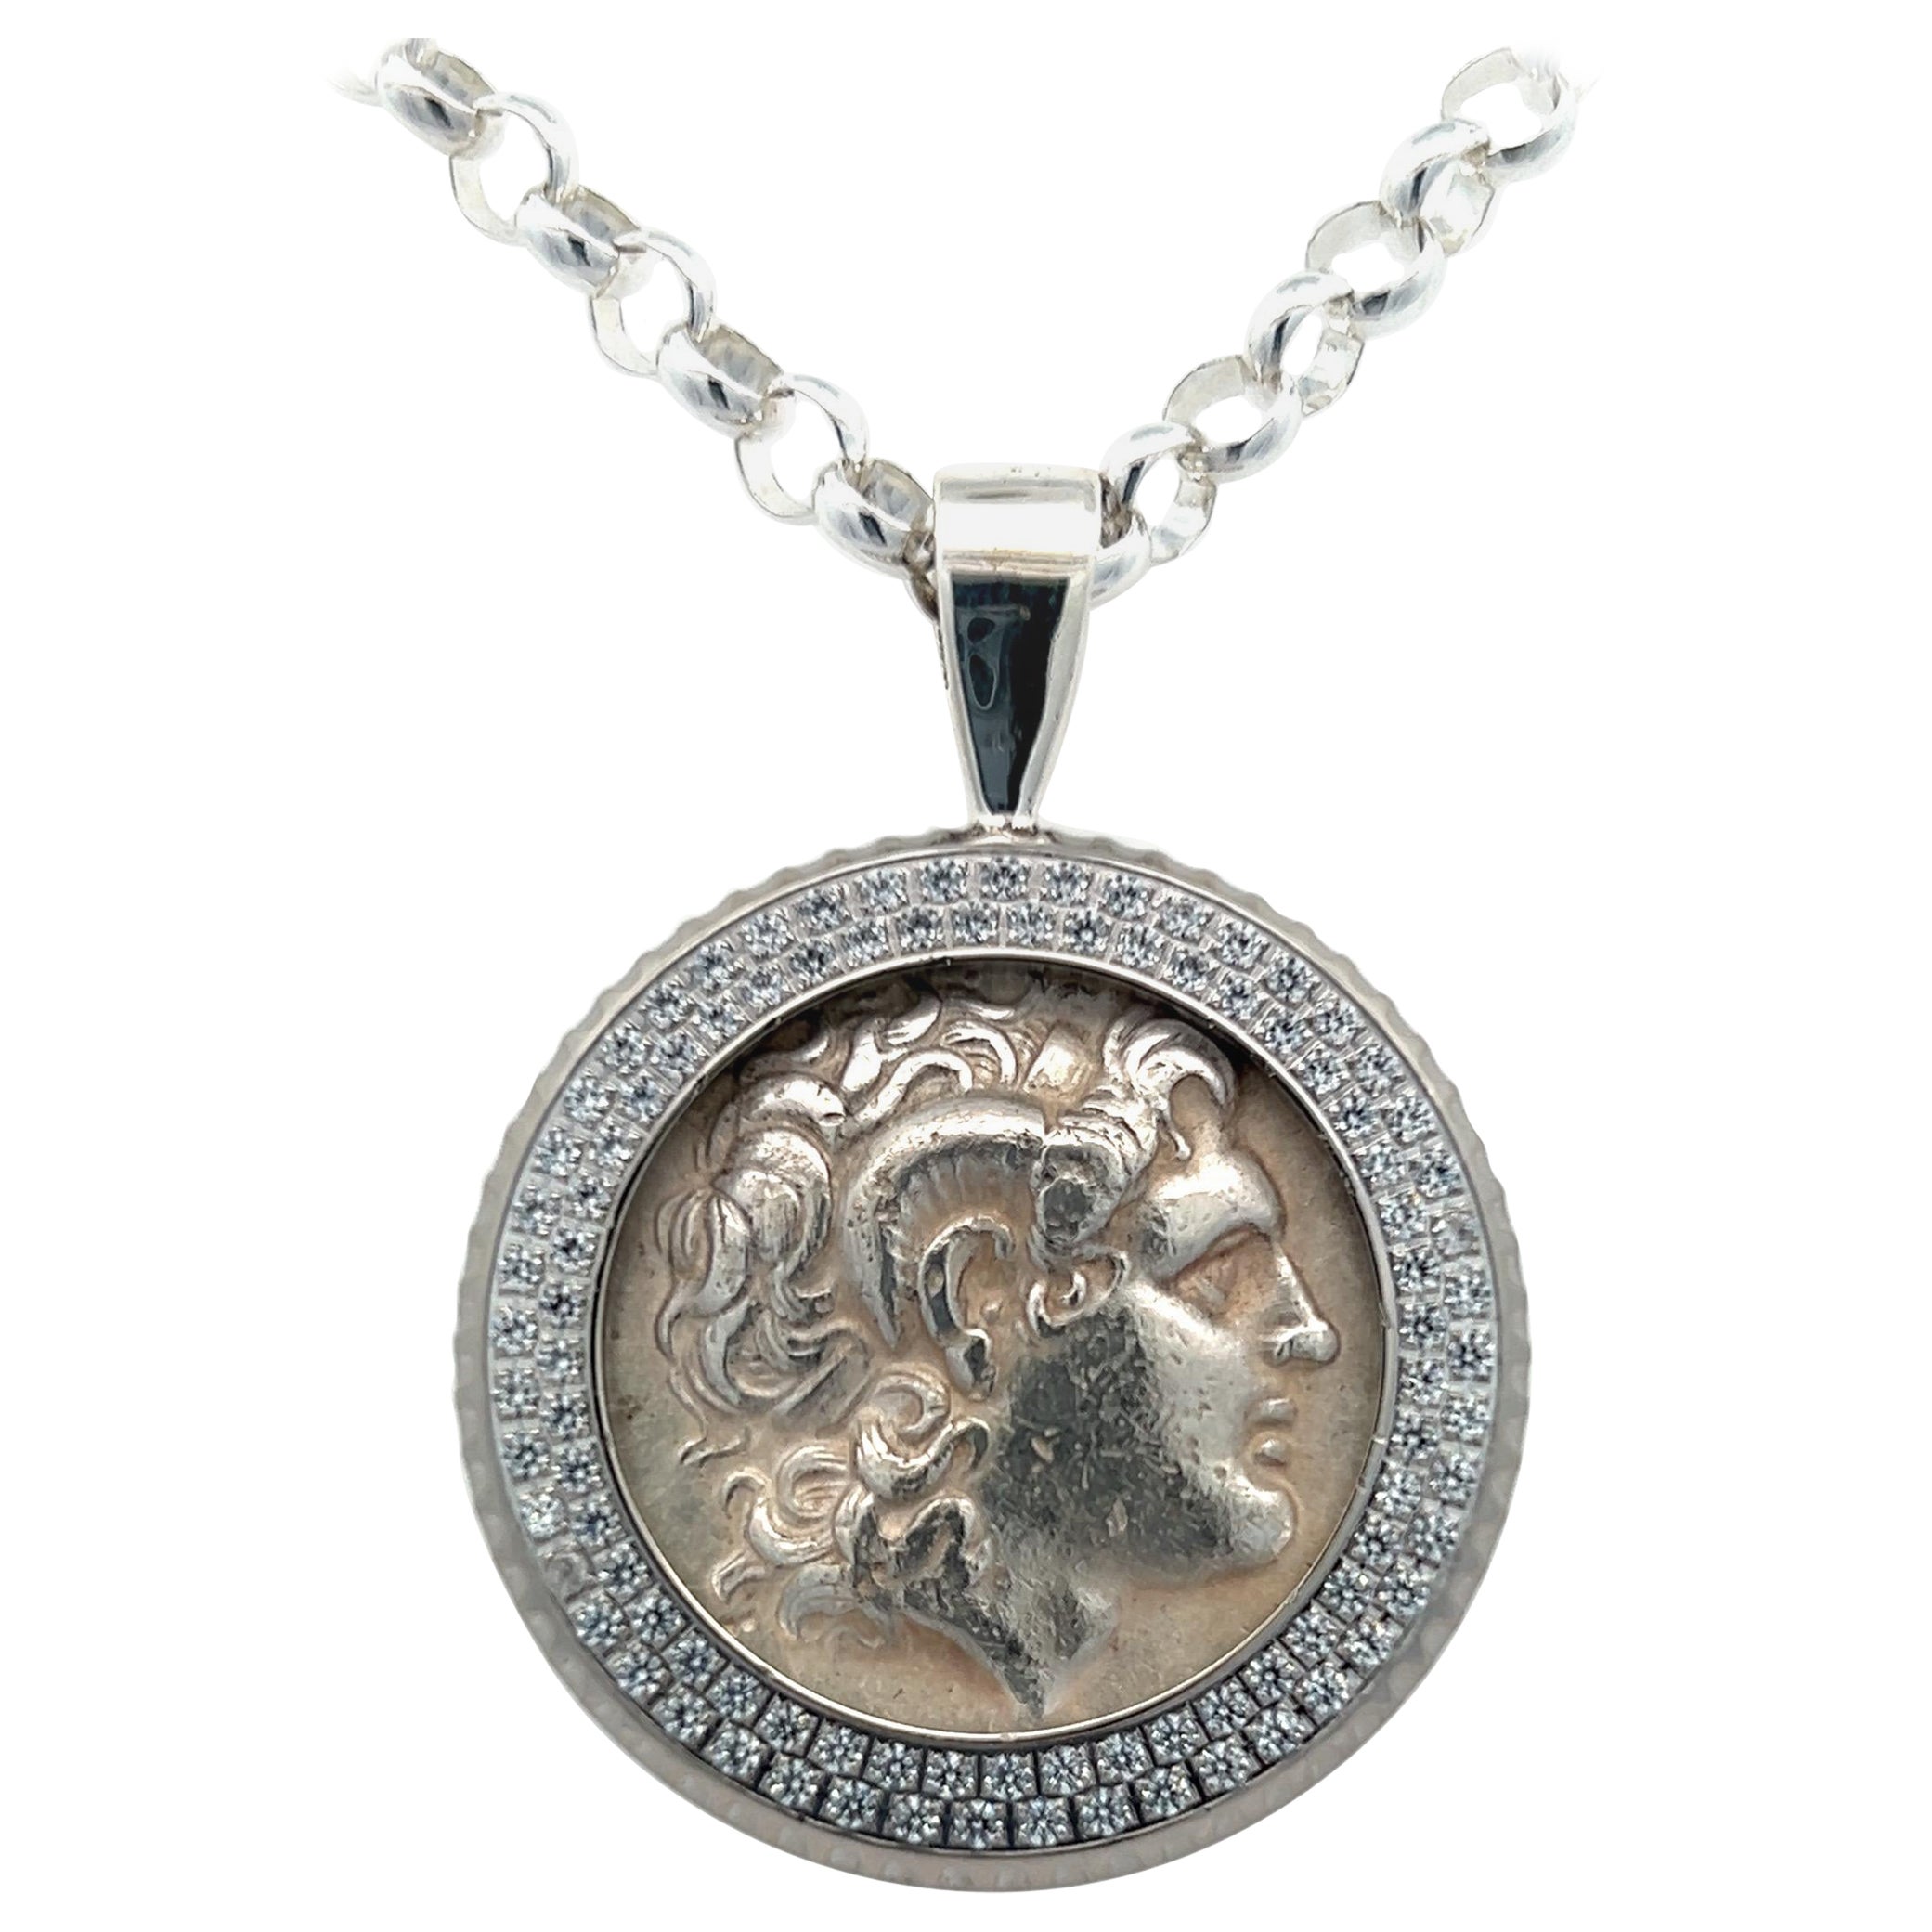 ALexander The Great Coin Chain pendentif authentique Tetradrachm en argent de la Grèce antique en vente